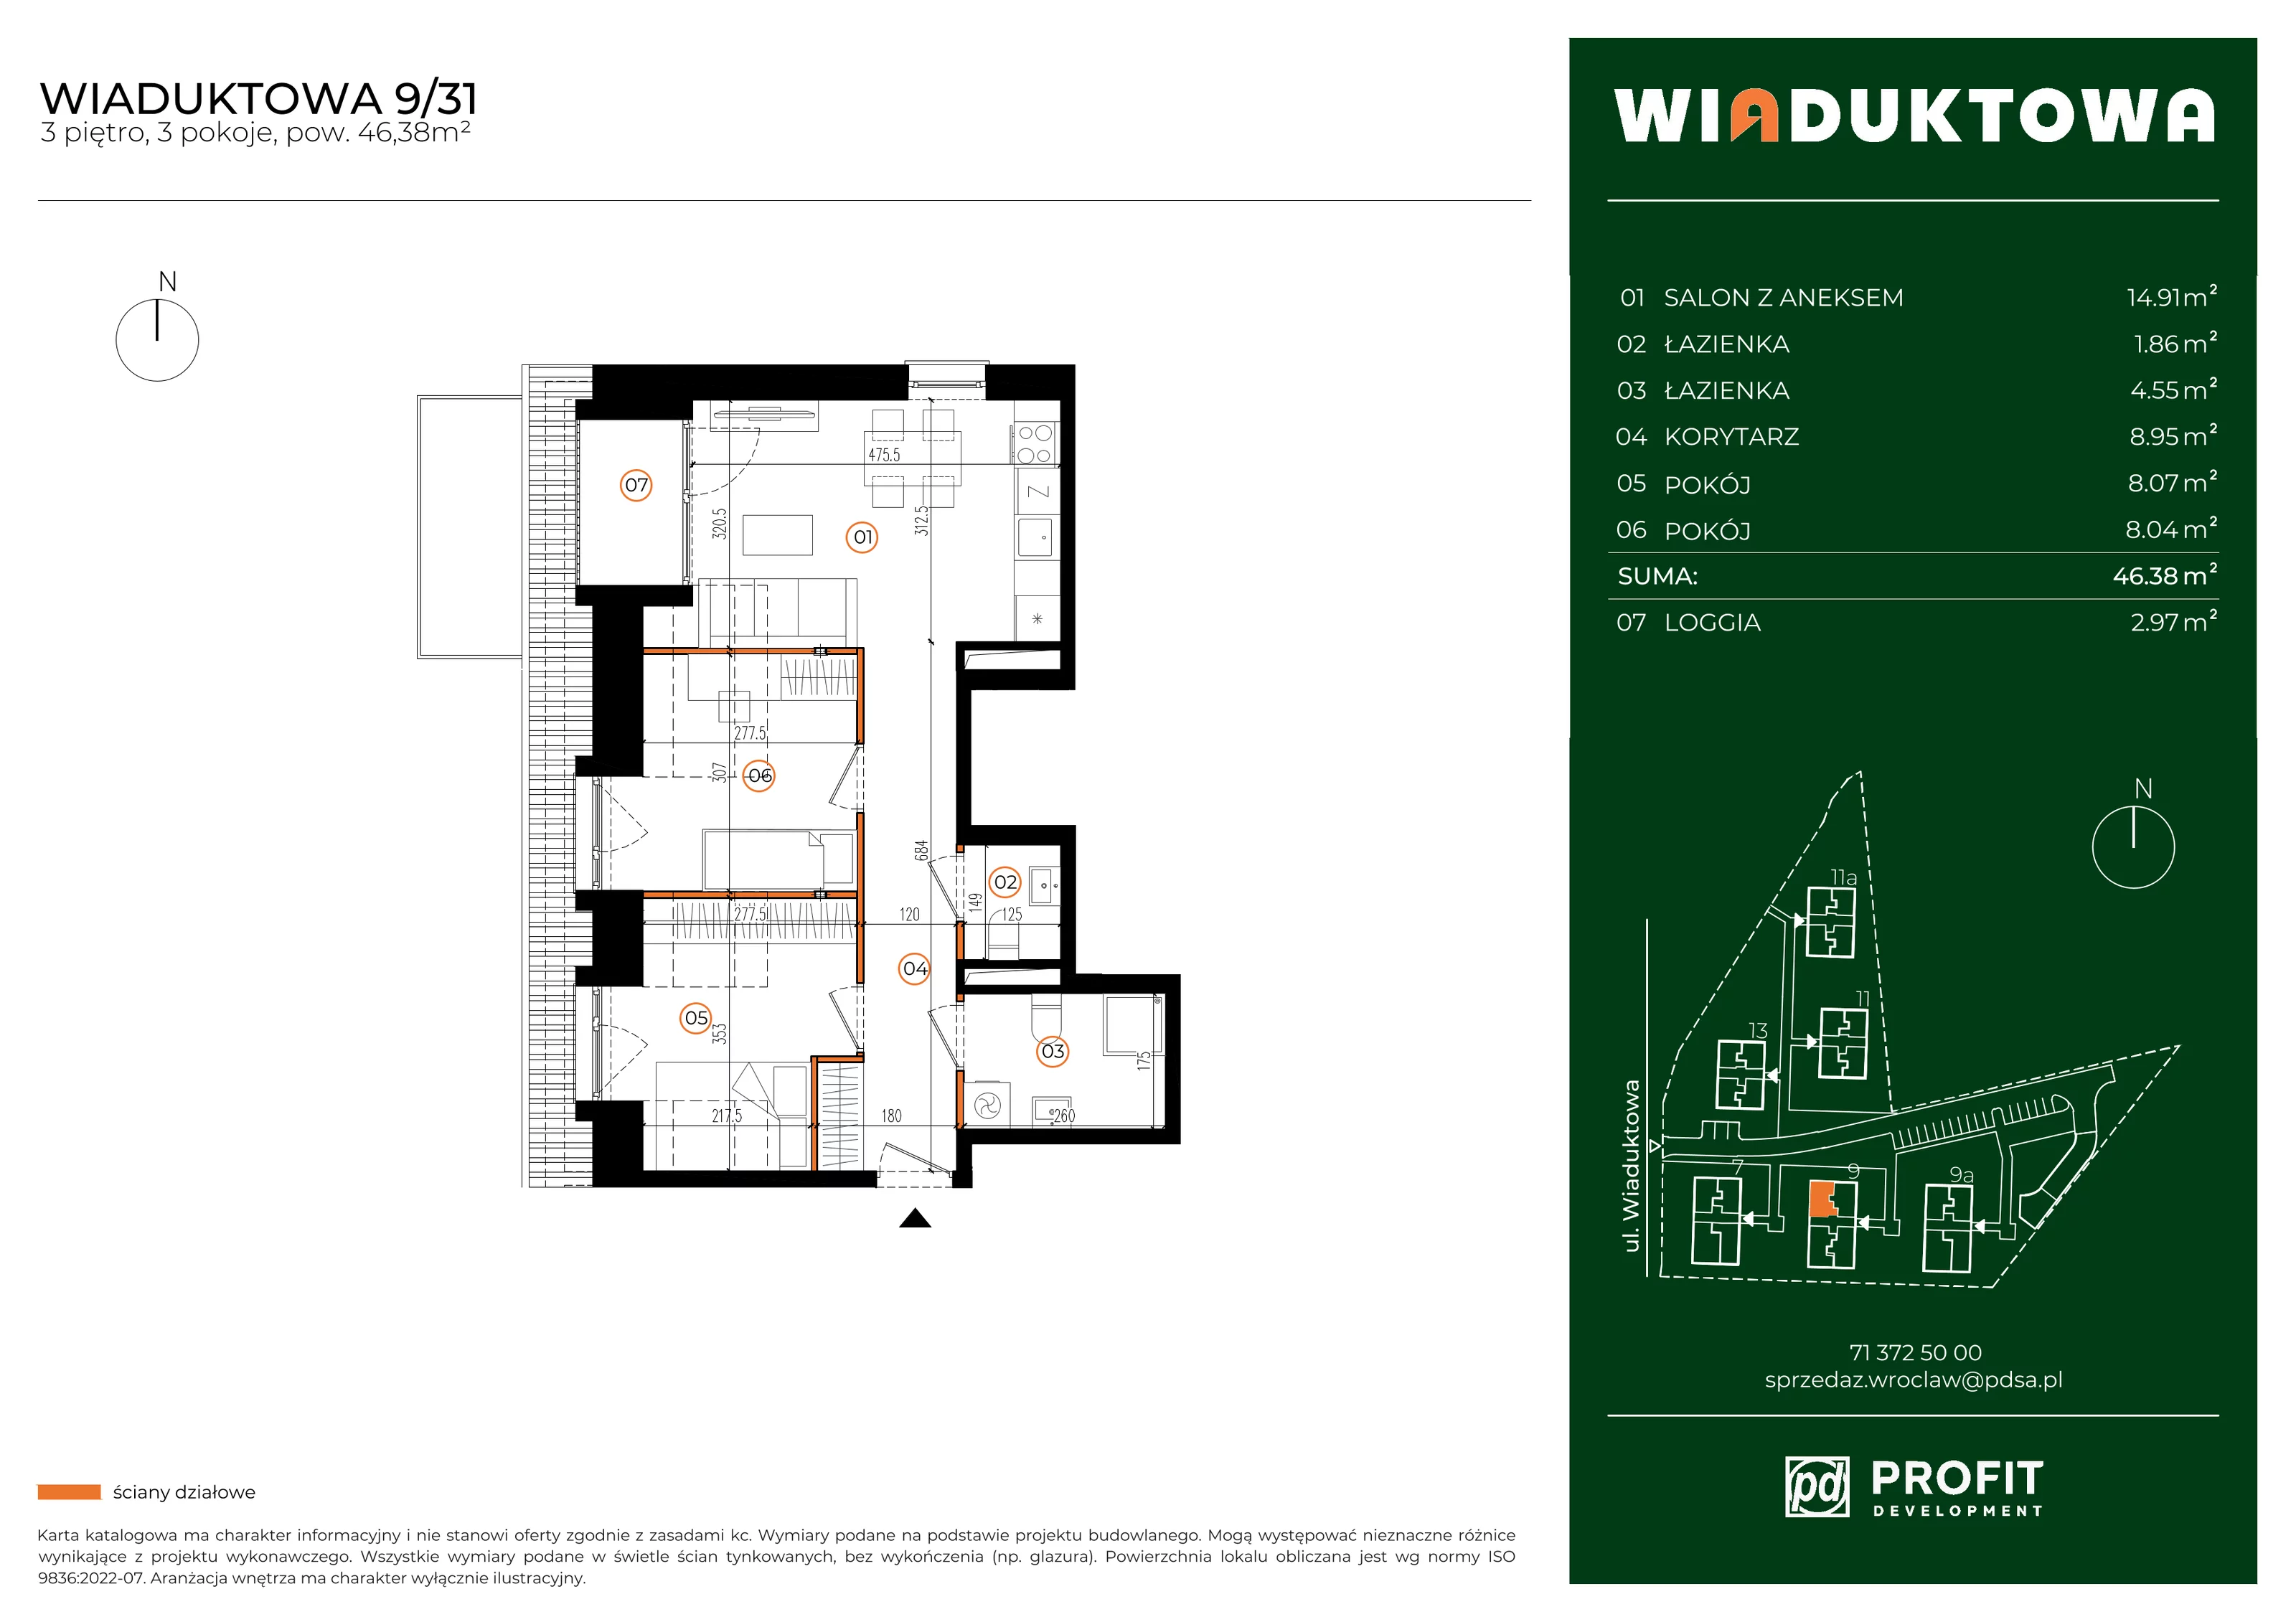 Mieszkanie 46,38 m², piętro 3, oferta nr WI/9/31, Wiaduktowa, Wrocław, Krzyki-Partynice, Krzyki, ul. Wiaduktowa